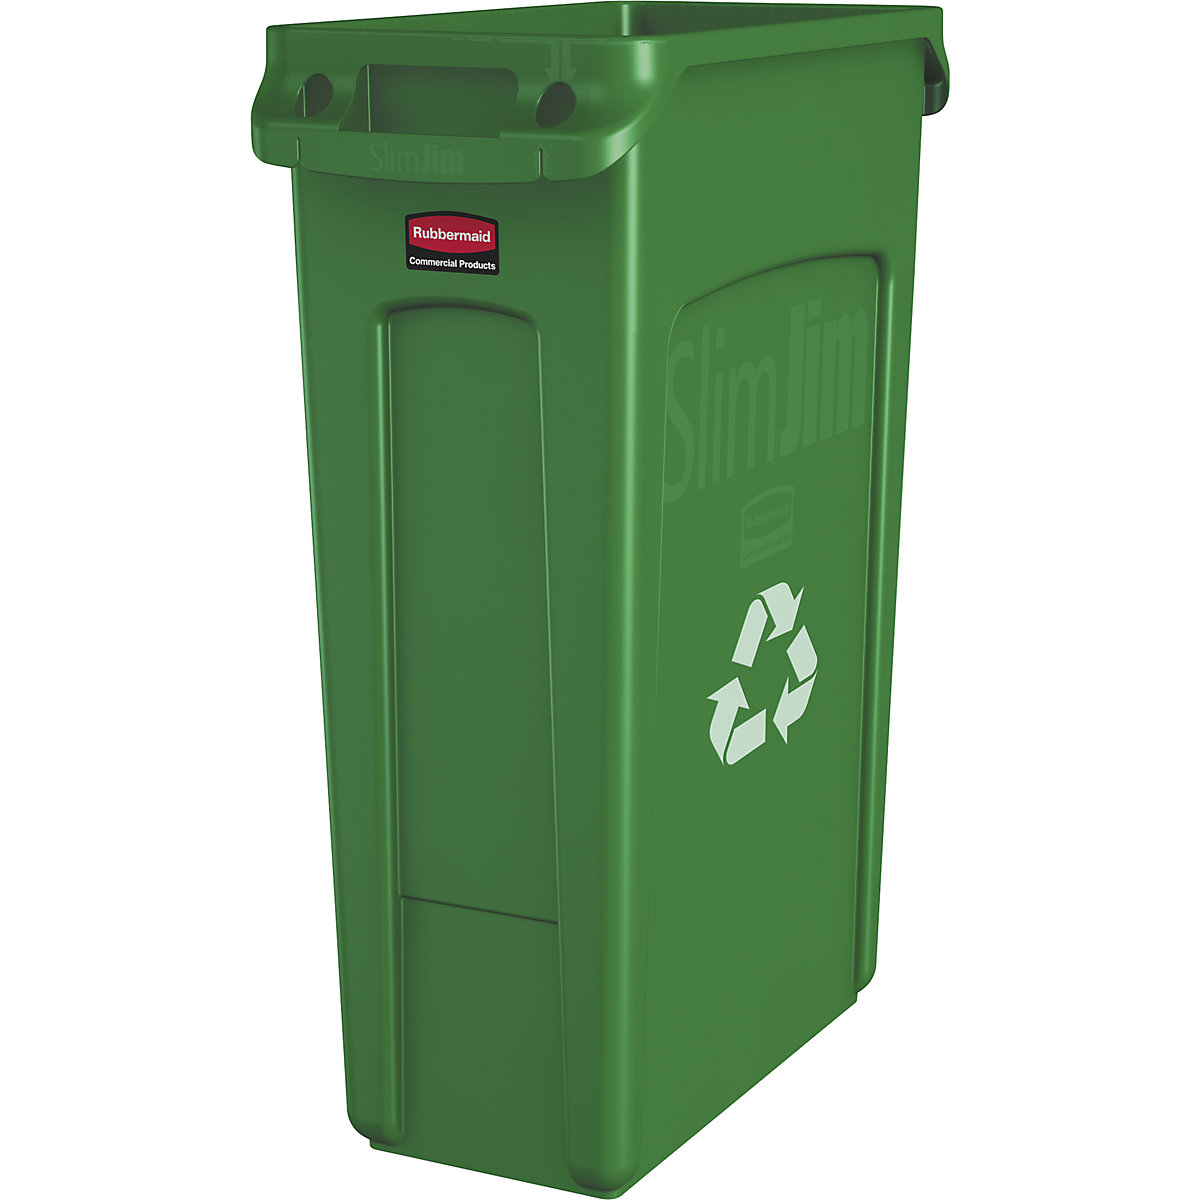 Pojemnik na surowce wtórne/pojemnik na odpady SLIM JIM® – Rubbermaid, poj. 87 l, z kanałami wentylacyjnymi, zielony z symbolem recyklingu, od 10 szt.-9